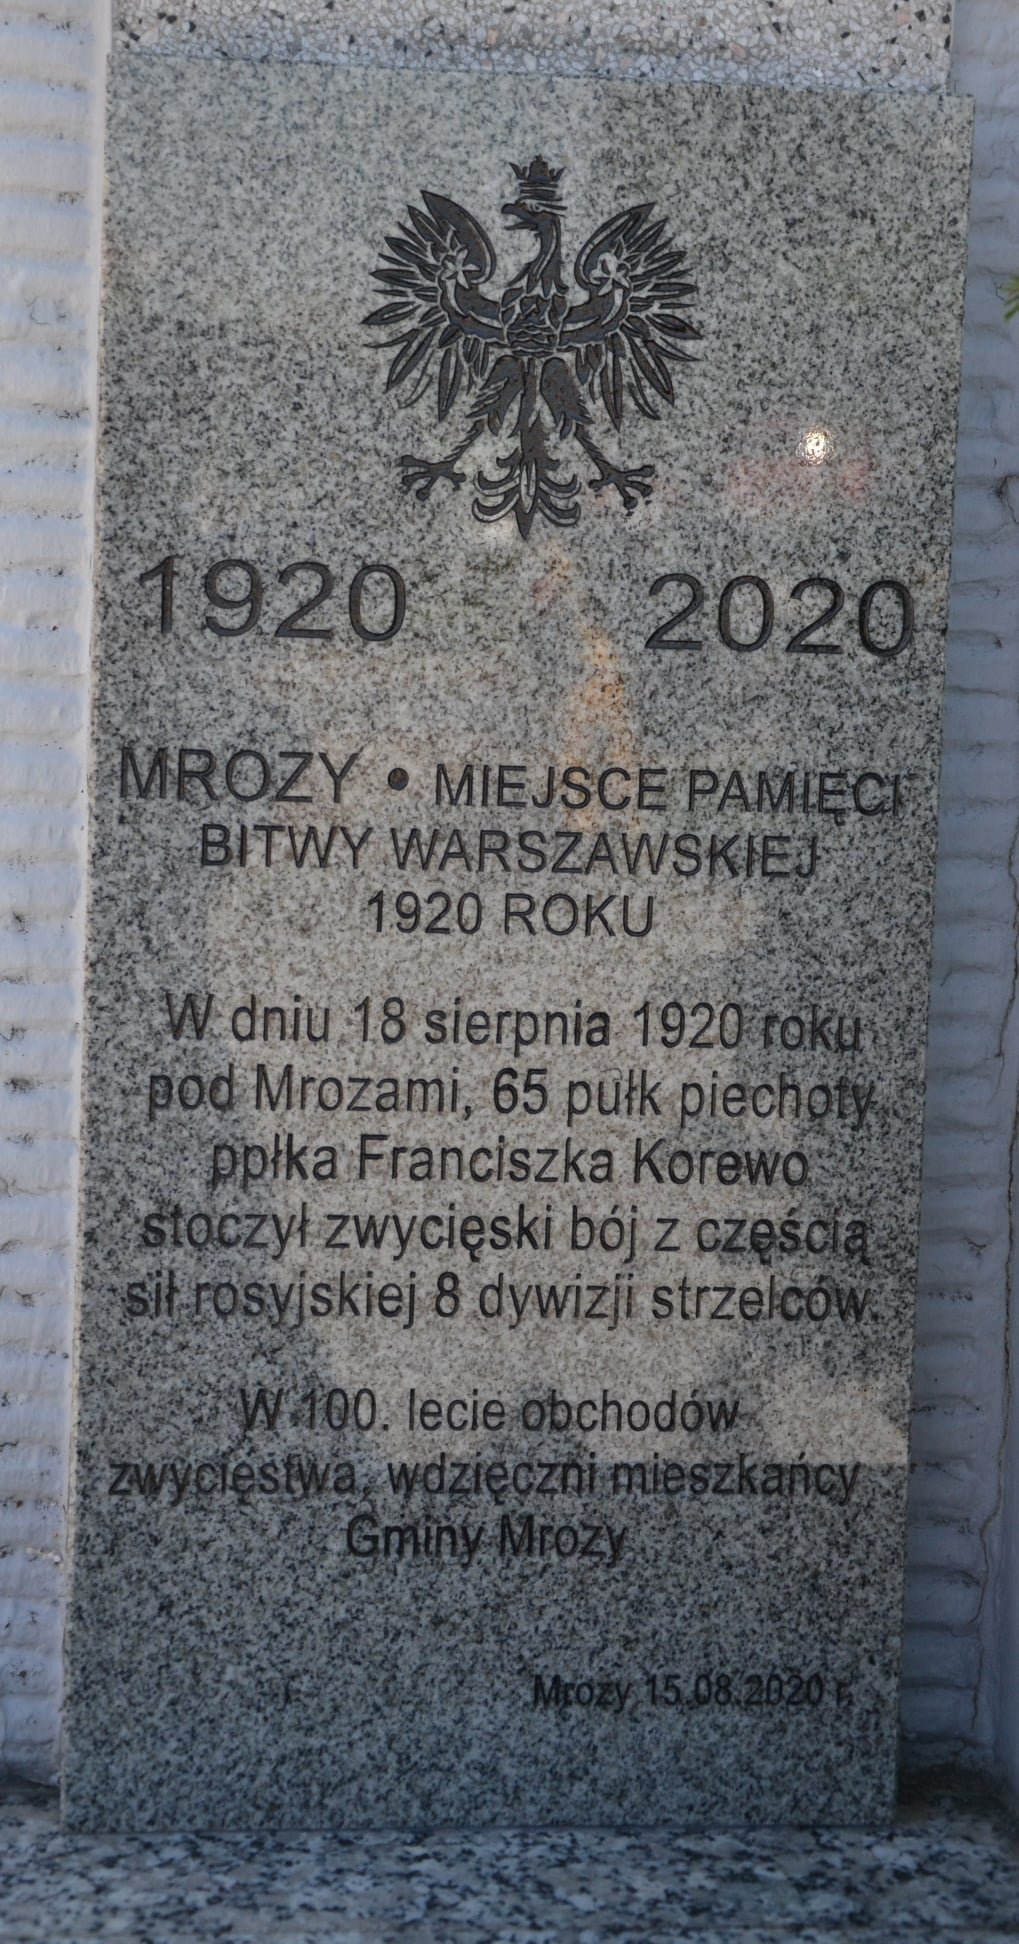 103-_Rocznica_Bitwy_Warszawskiej-zdjecie-tablica